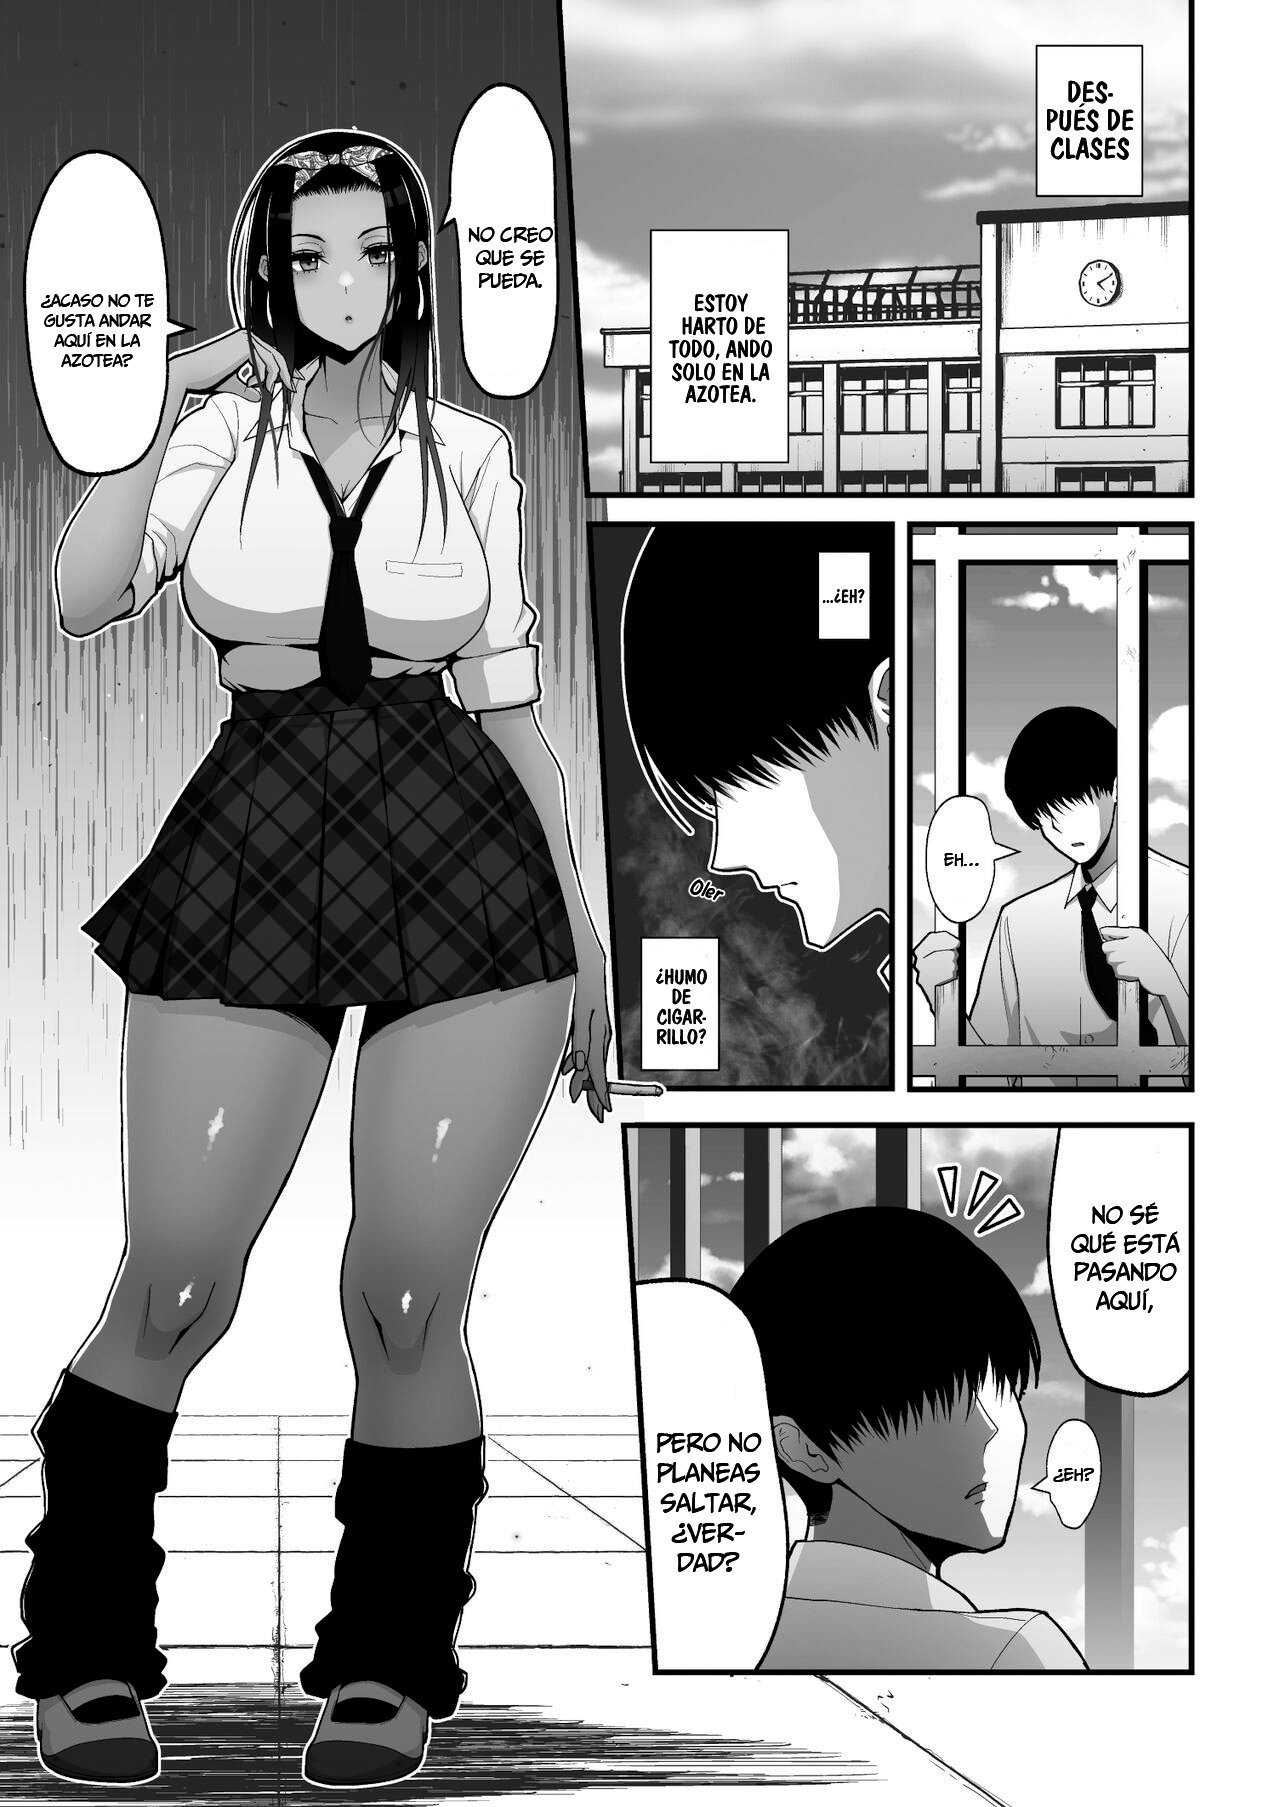 La historia sobre una amorosa gal otaku - 1